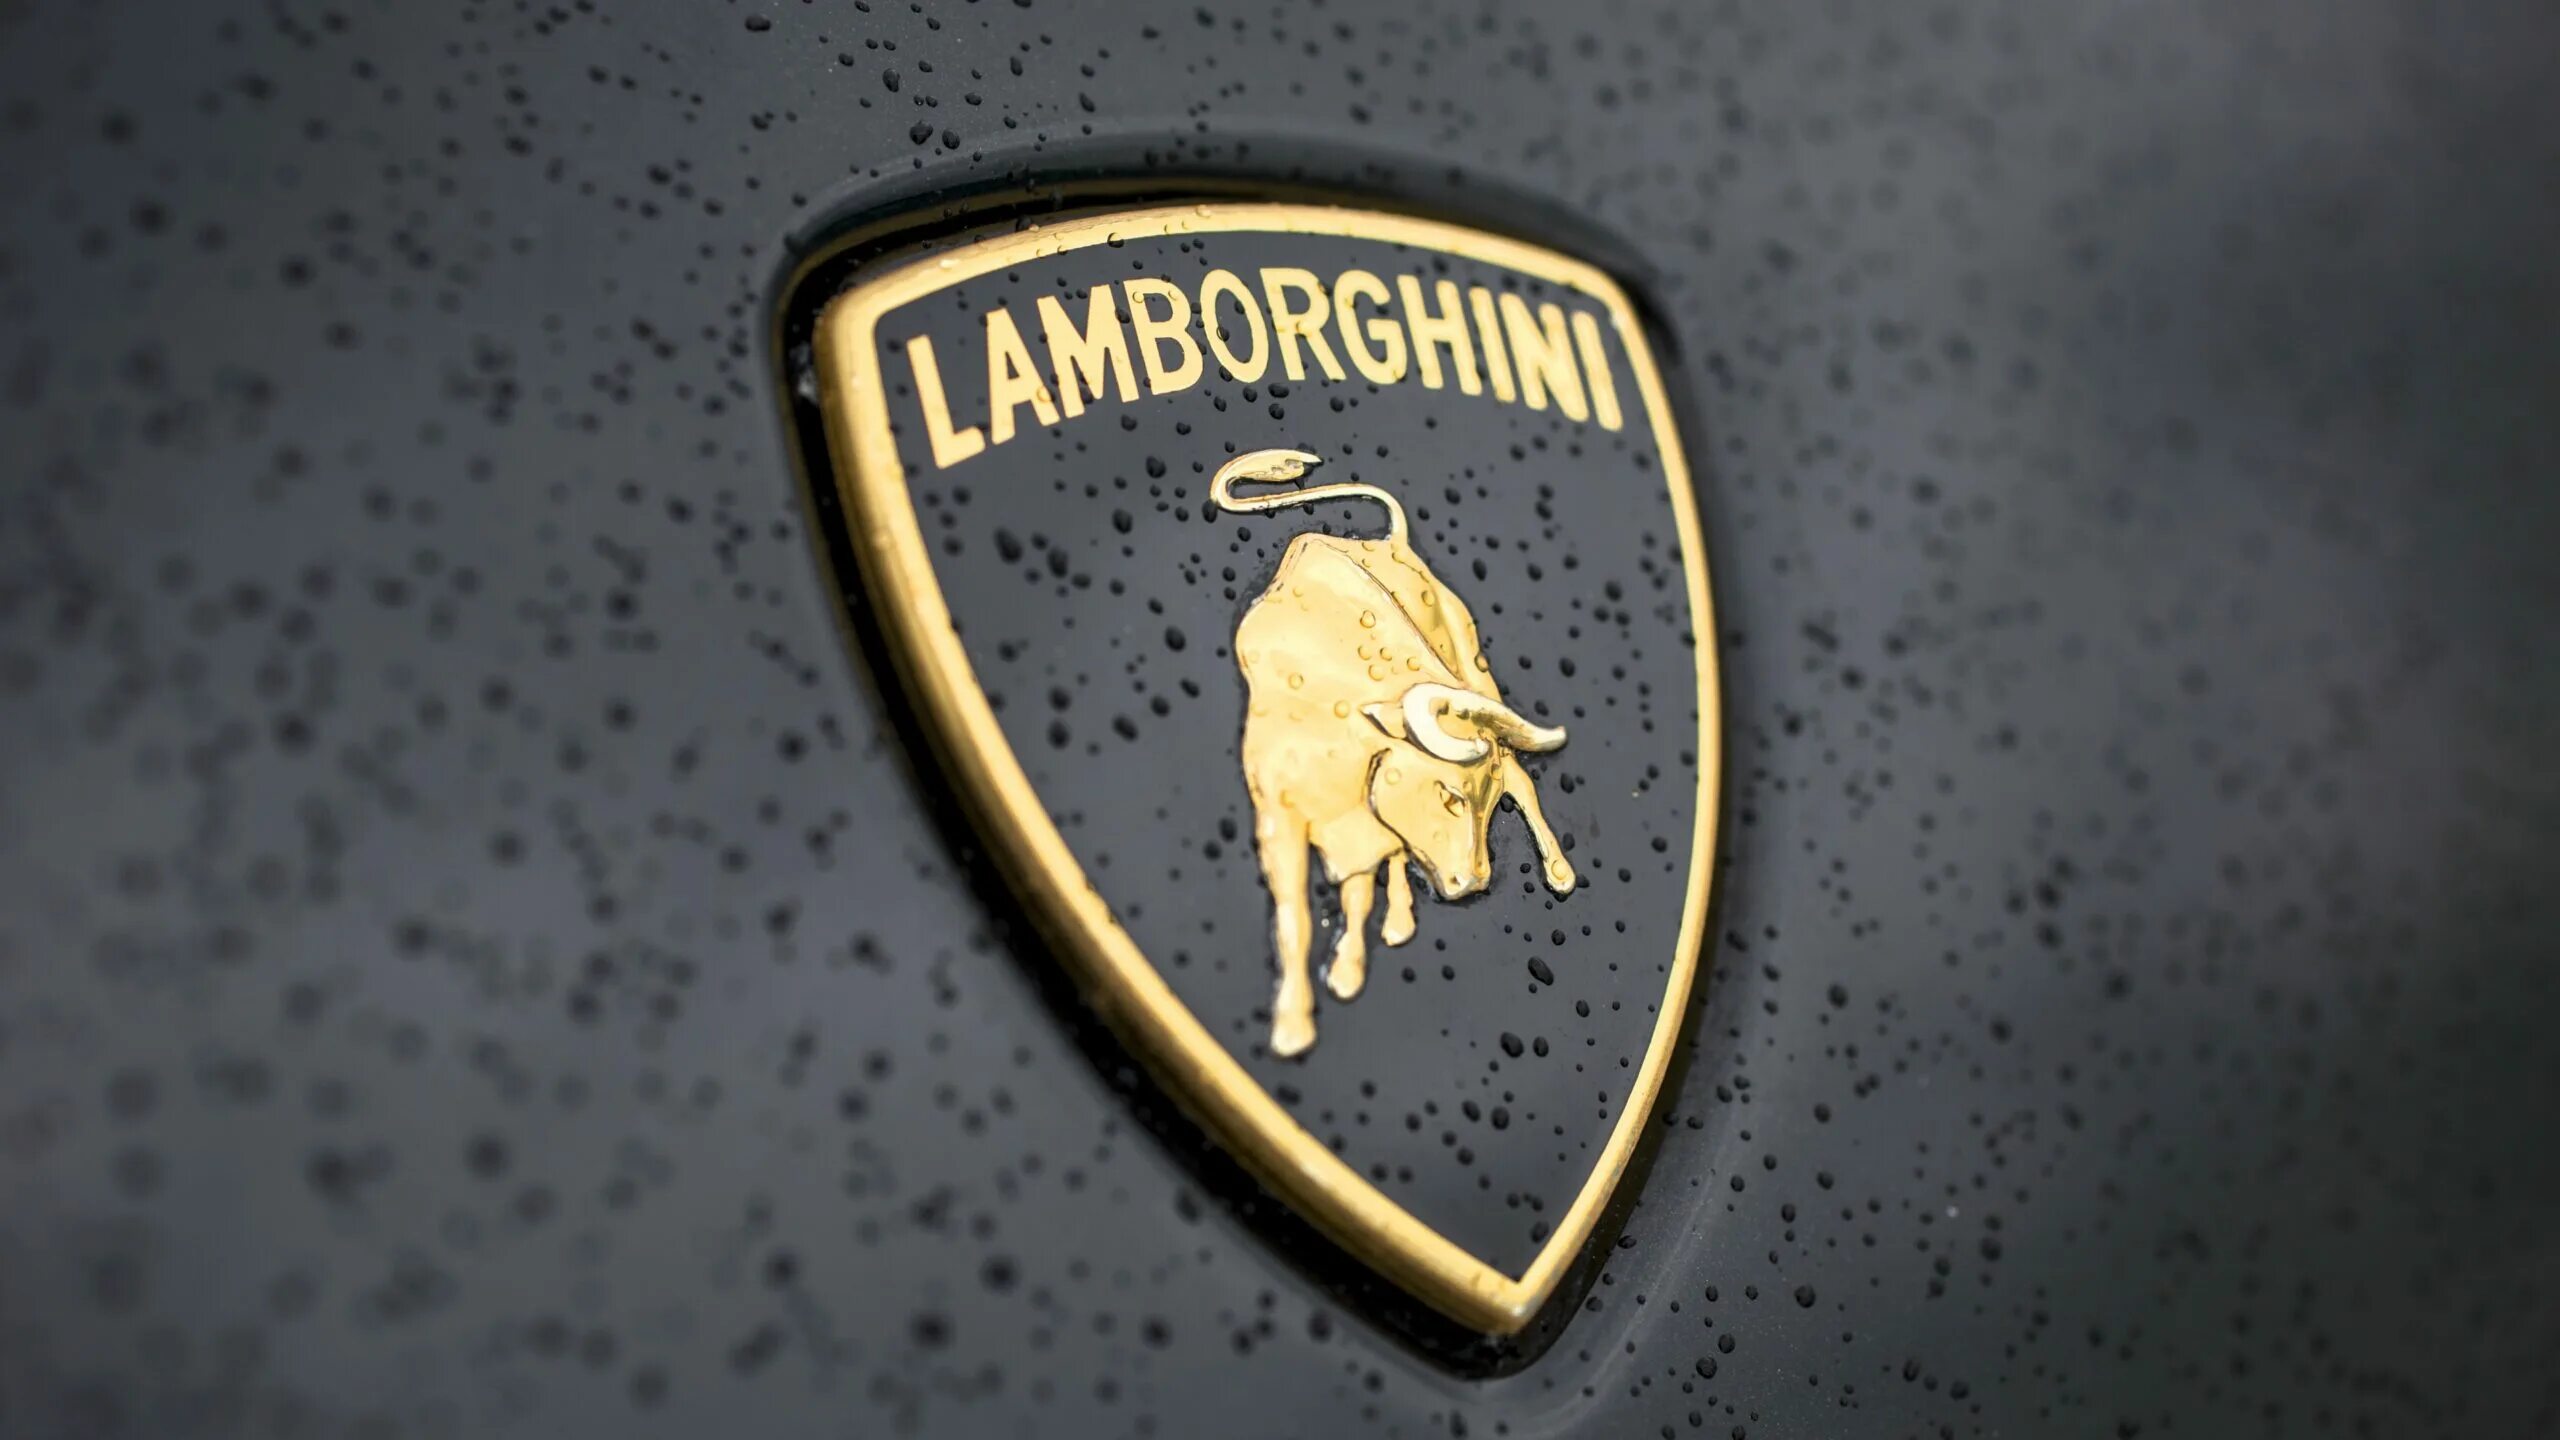 Ламборгини обои эмблема. Значок машины Ламборджини. Марка Lamborghini. Обои марки Ламборджини. Новый значок ламборгини